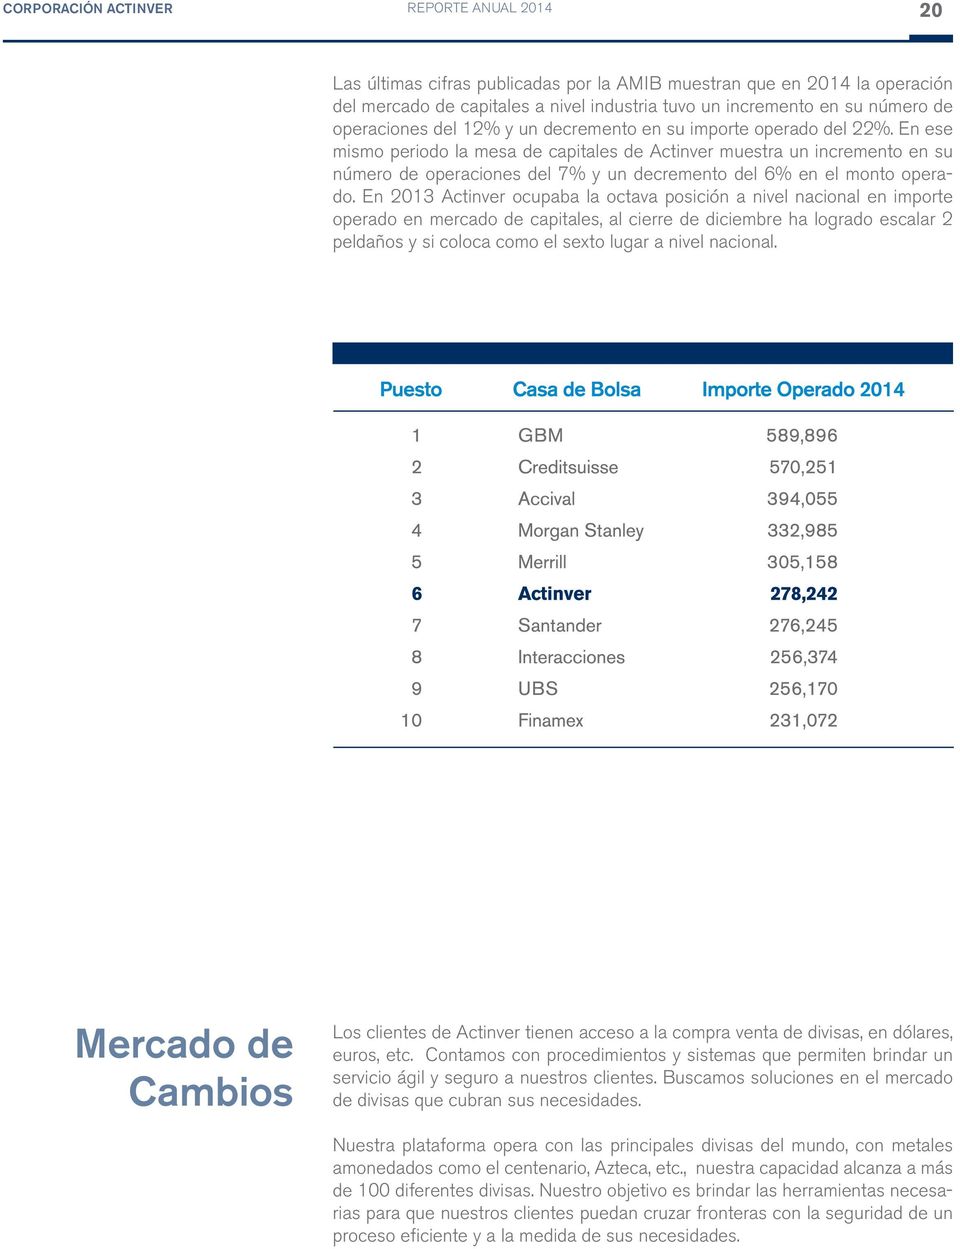 En 2013 Actinver ocupaba la octava posición a nivel nacional en importe operado en mercado de capitales, al cierre de diciembre ha logrado escalar 2 peldaños y si coloca como el sexto lugar a nivel